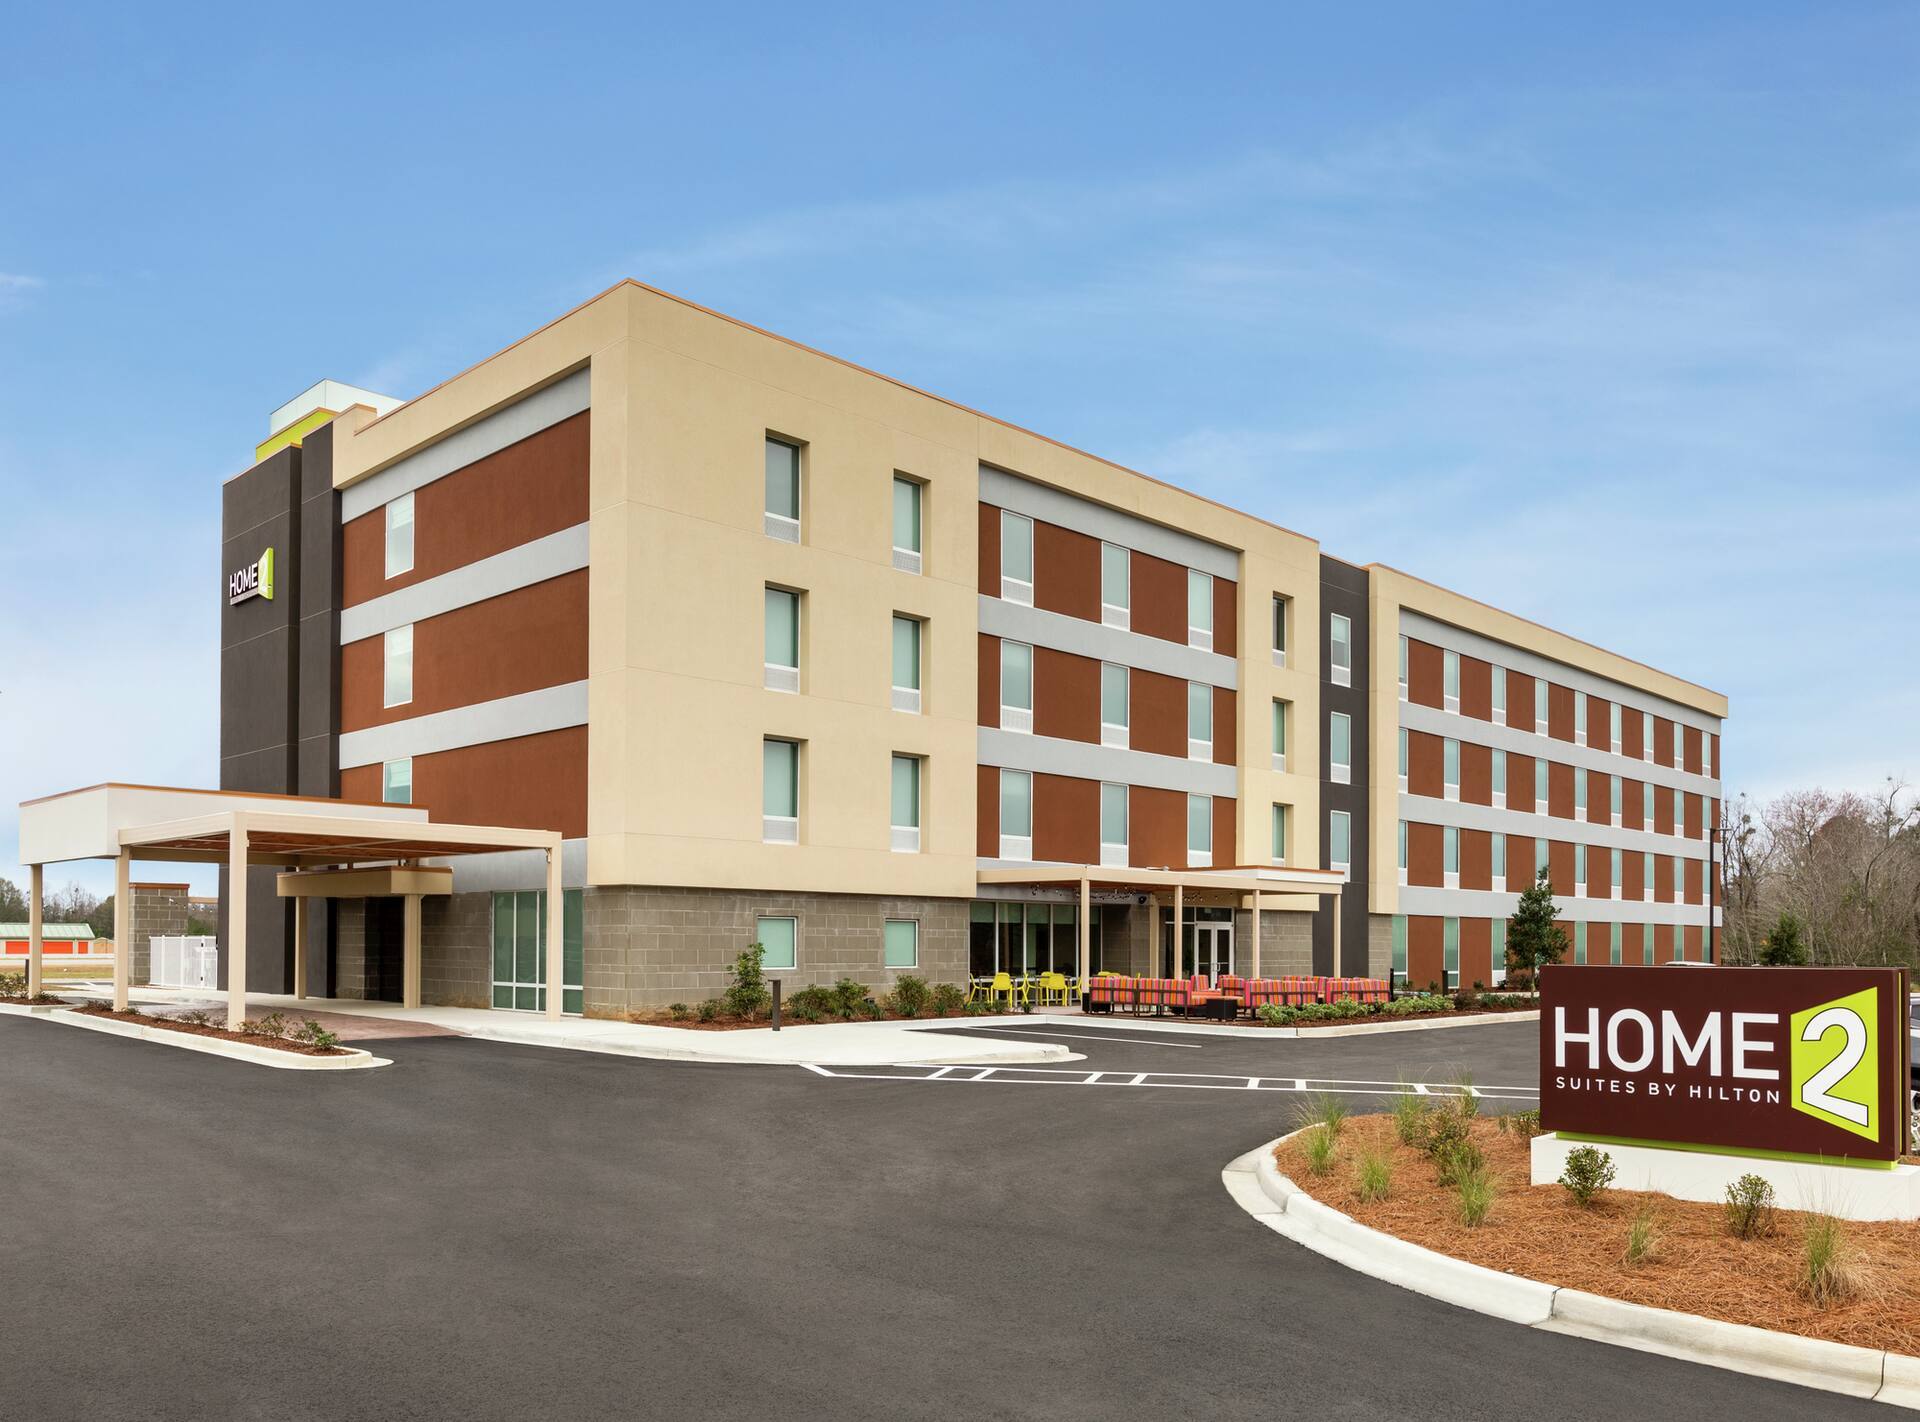 Photo of Home2 Suites by Hilton Statesboro, Statesboro, GA